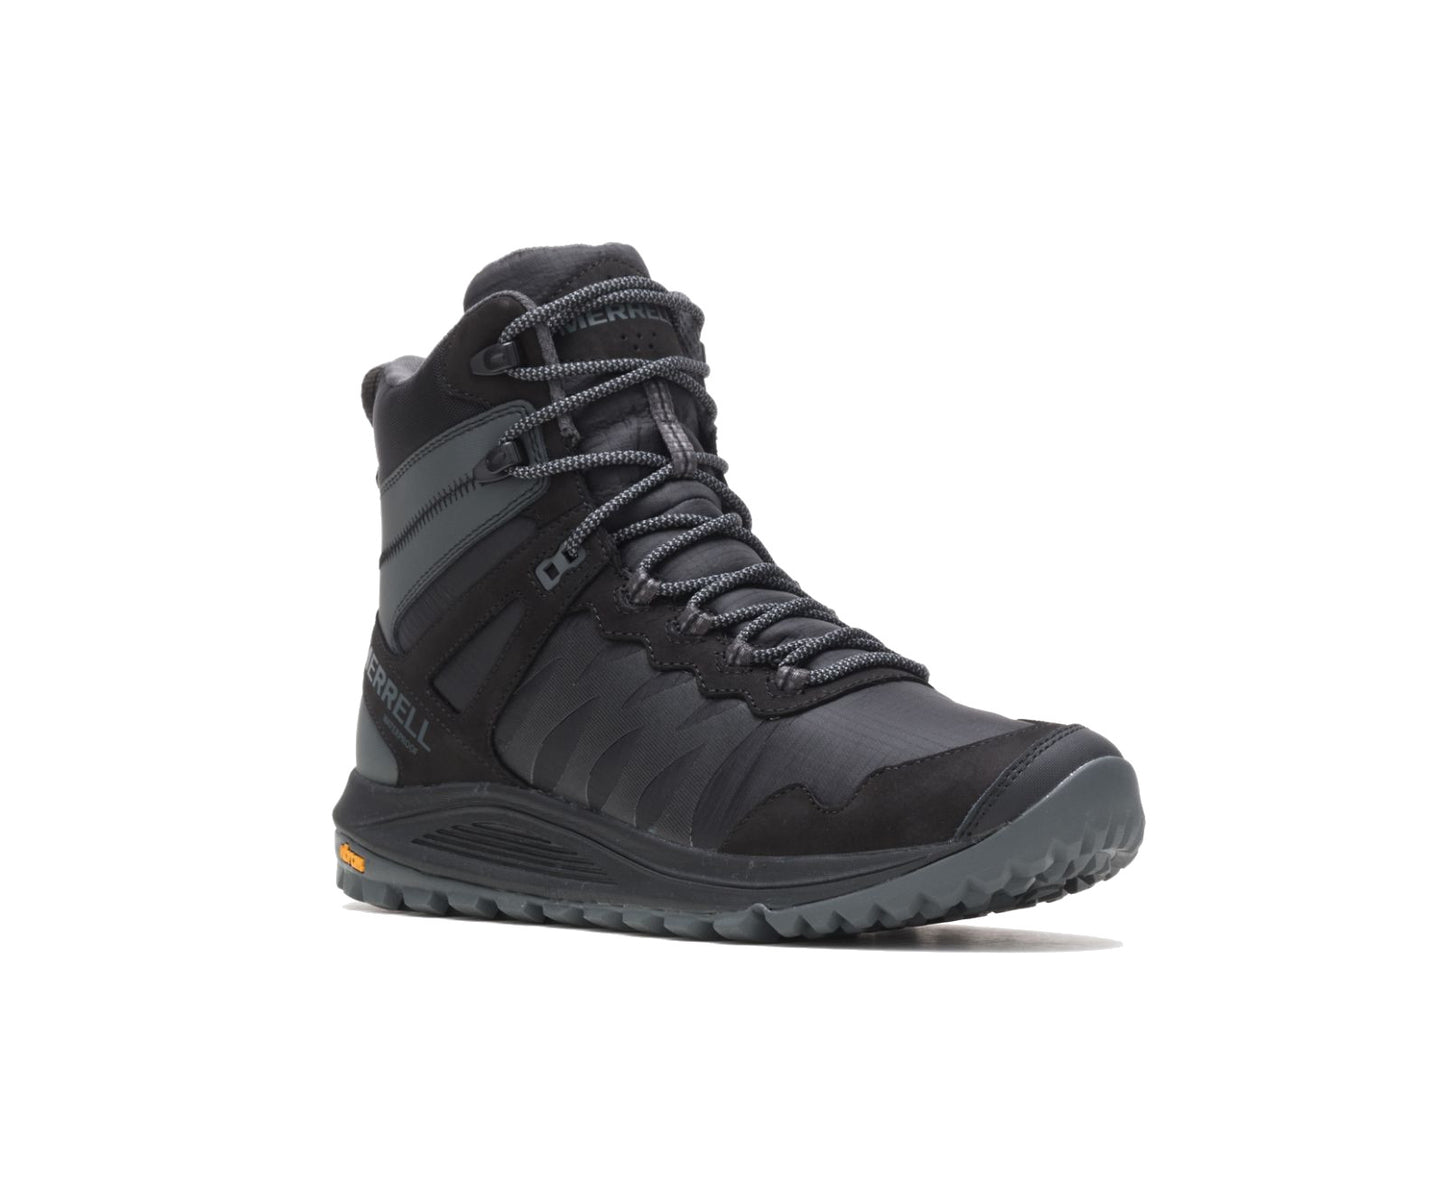 Merrell Men's Nova Waterproof Sneaker Boot - Black Rock